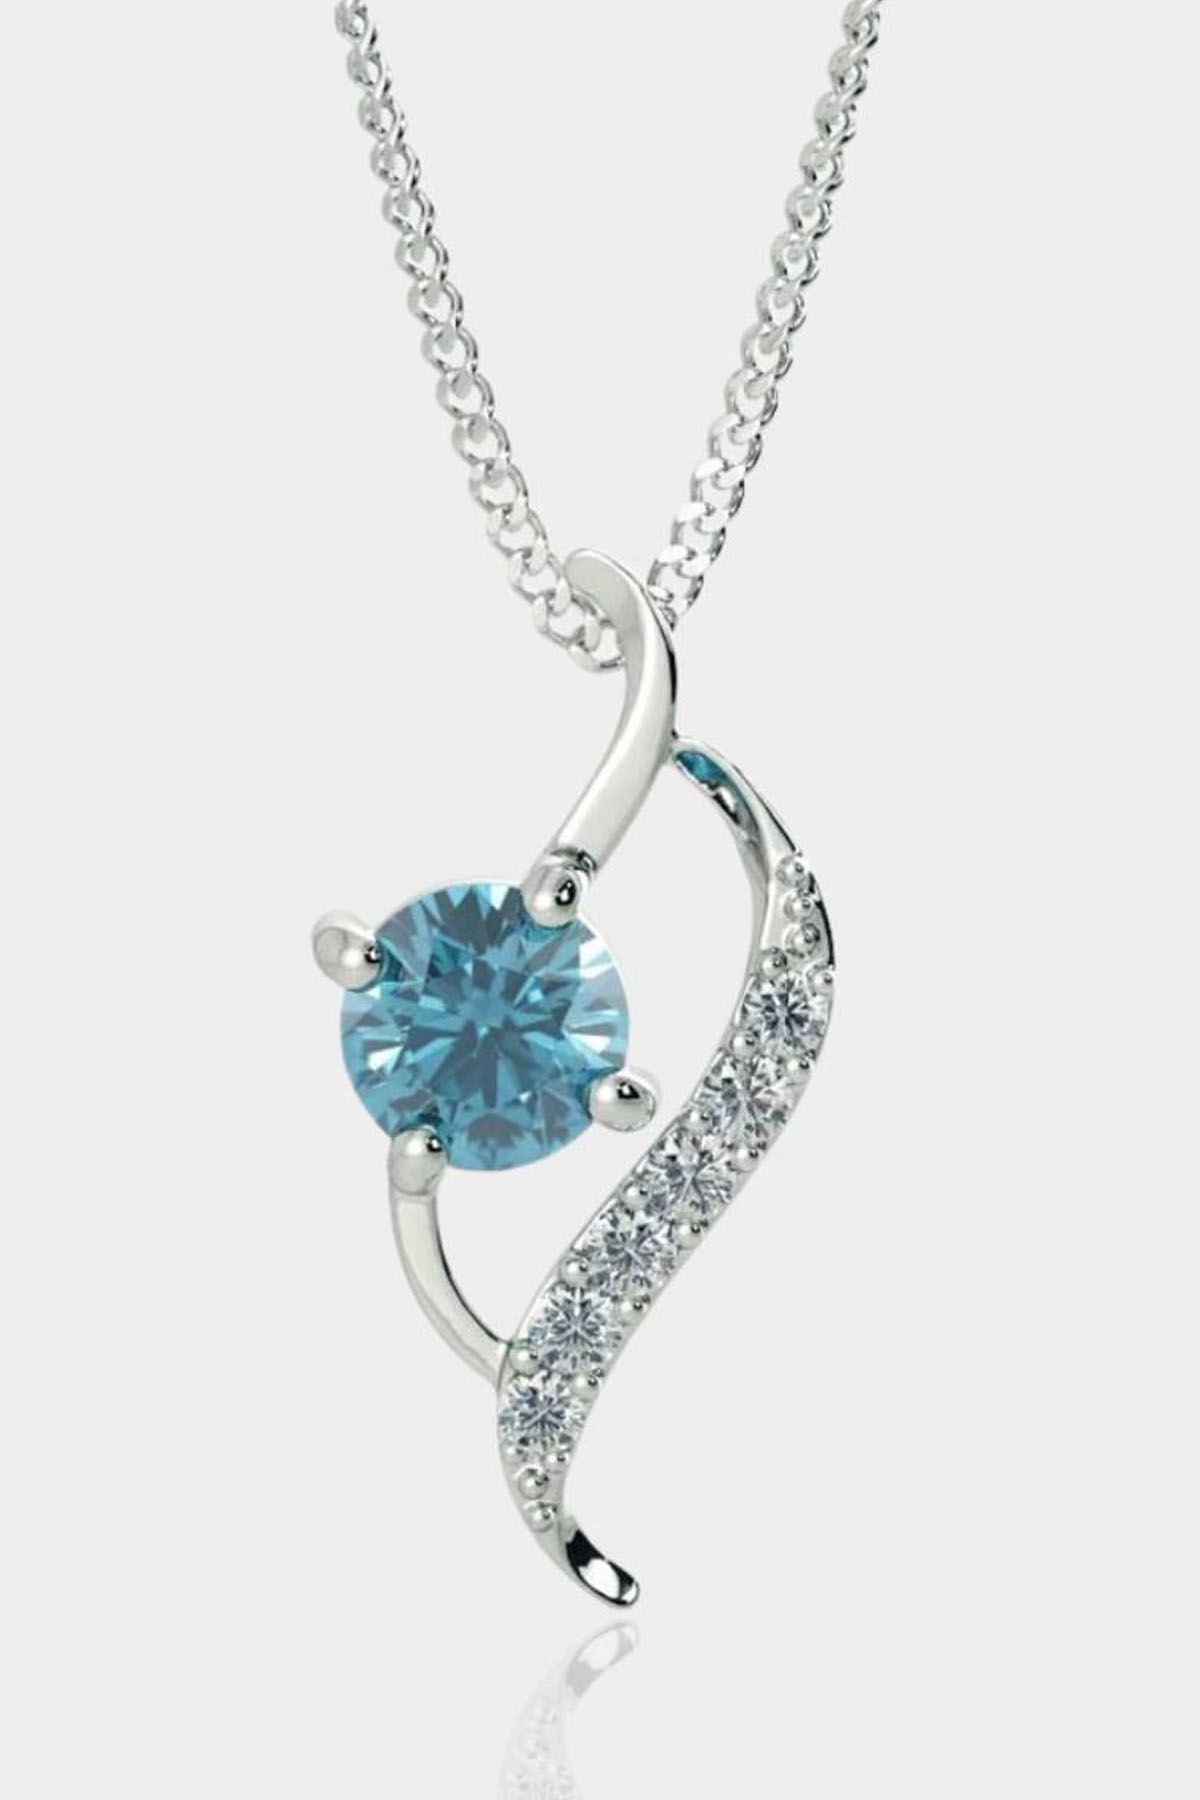 Blue Ocean Zircon Necklace - 925 Silver